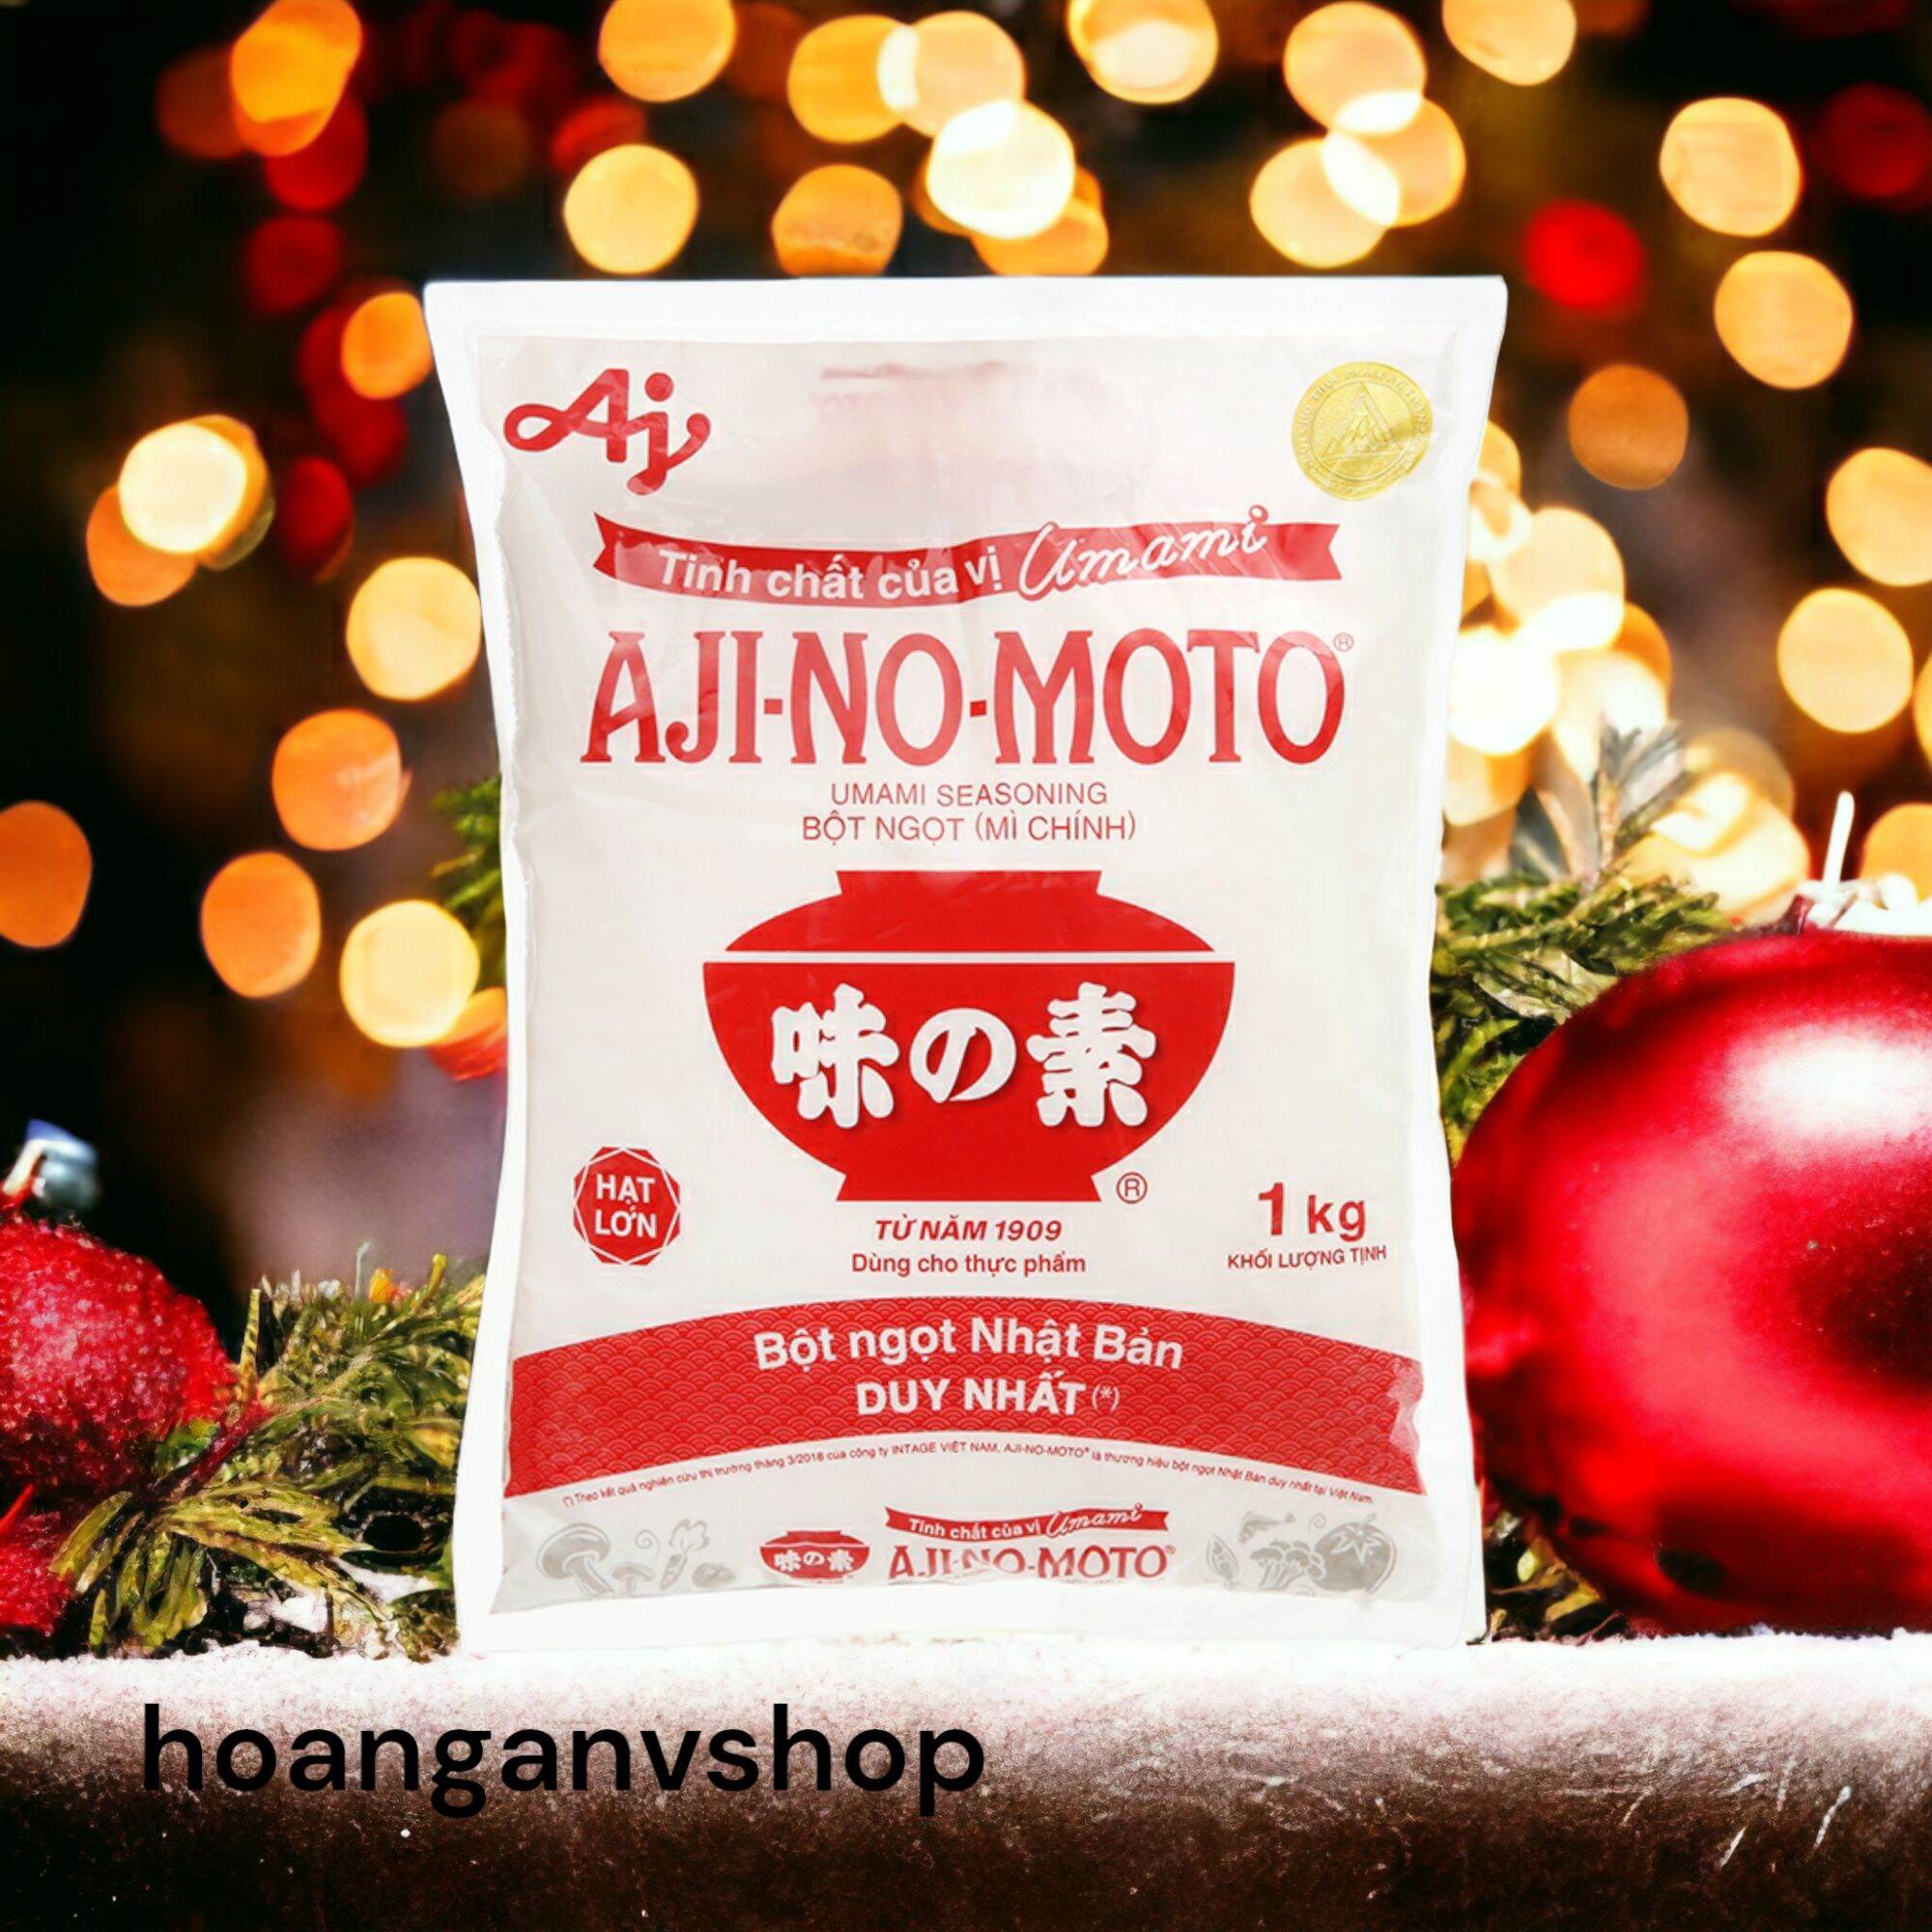 Bột ngọt Ajinomoto 1kg Hạt Lớn